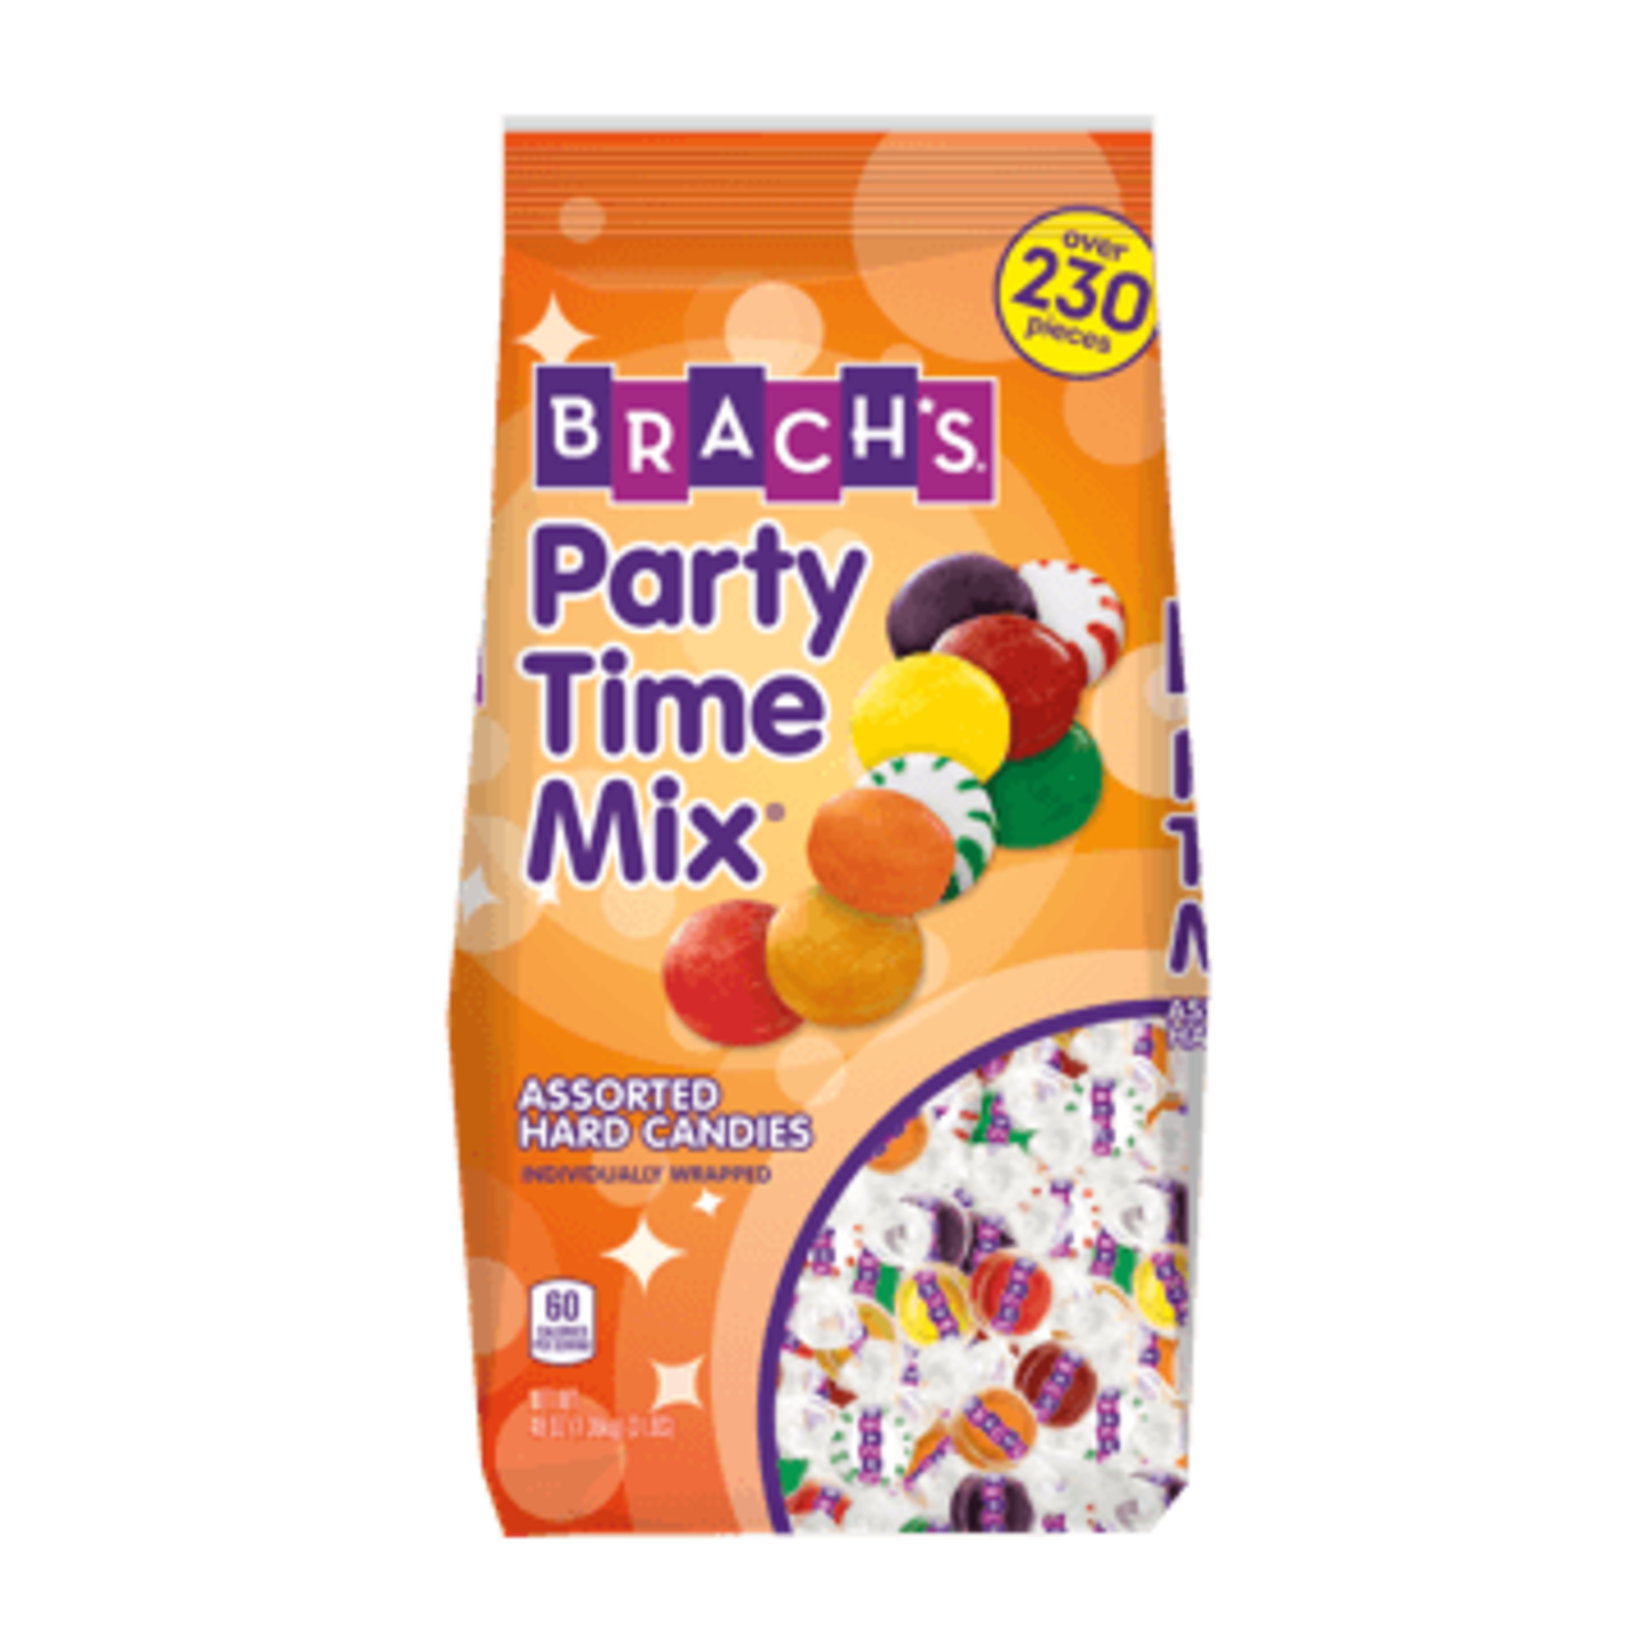 Brachs Brach's Party Time Mix